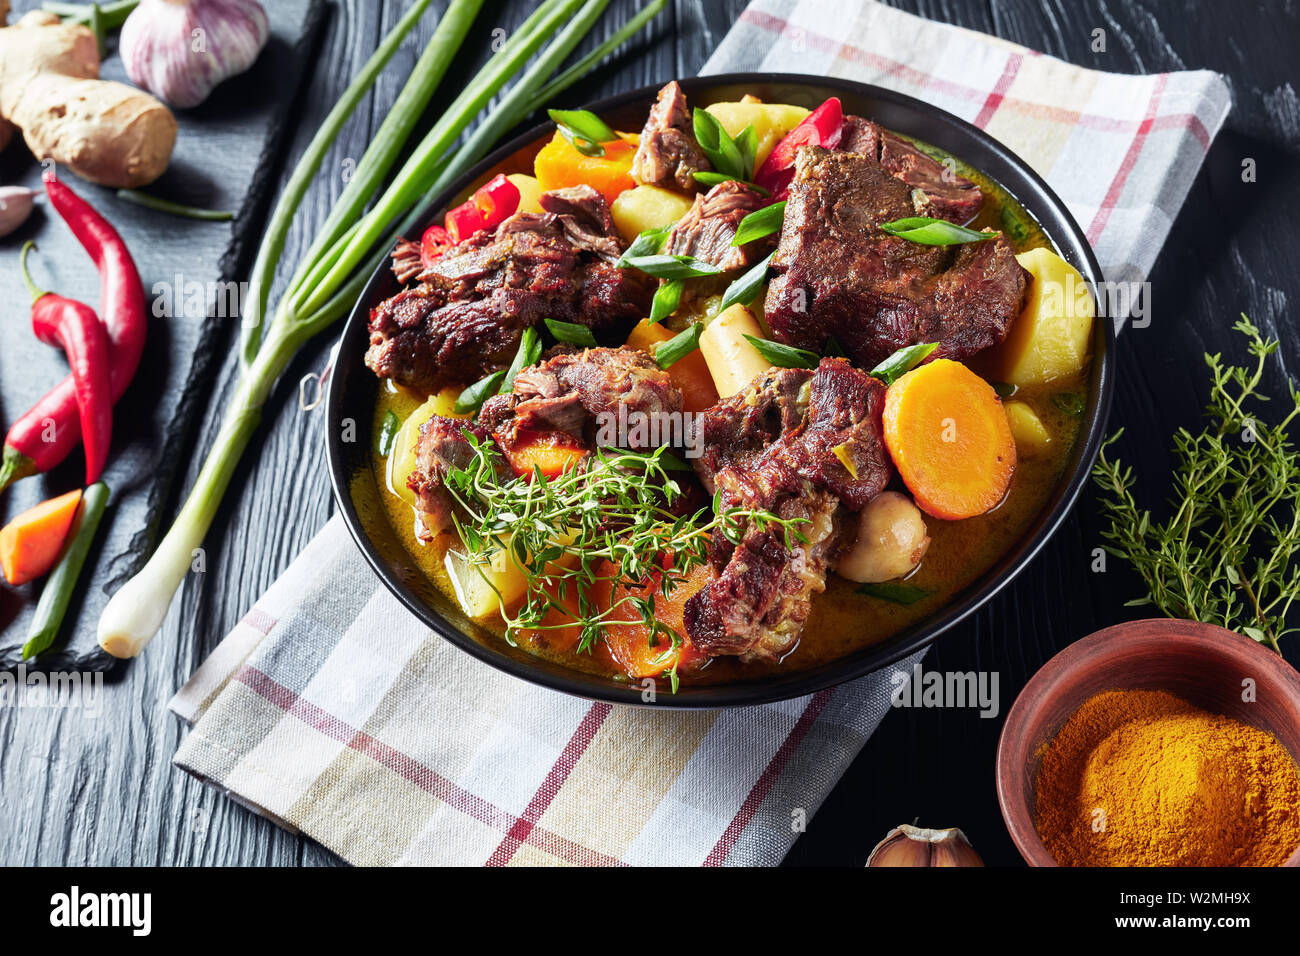 Tradizionale giamaicana di capra al Curry - slow cotto speziato giamaicano di carni e verdure al curry piccante in una ciotola nero su una tavola in legno rustico, close-up Foto Stock